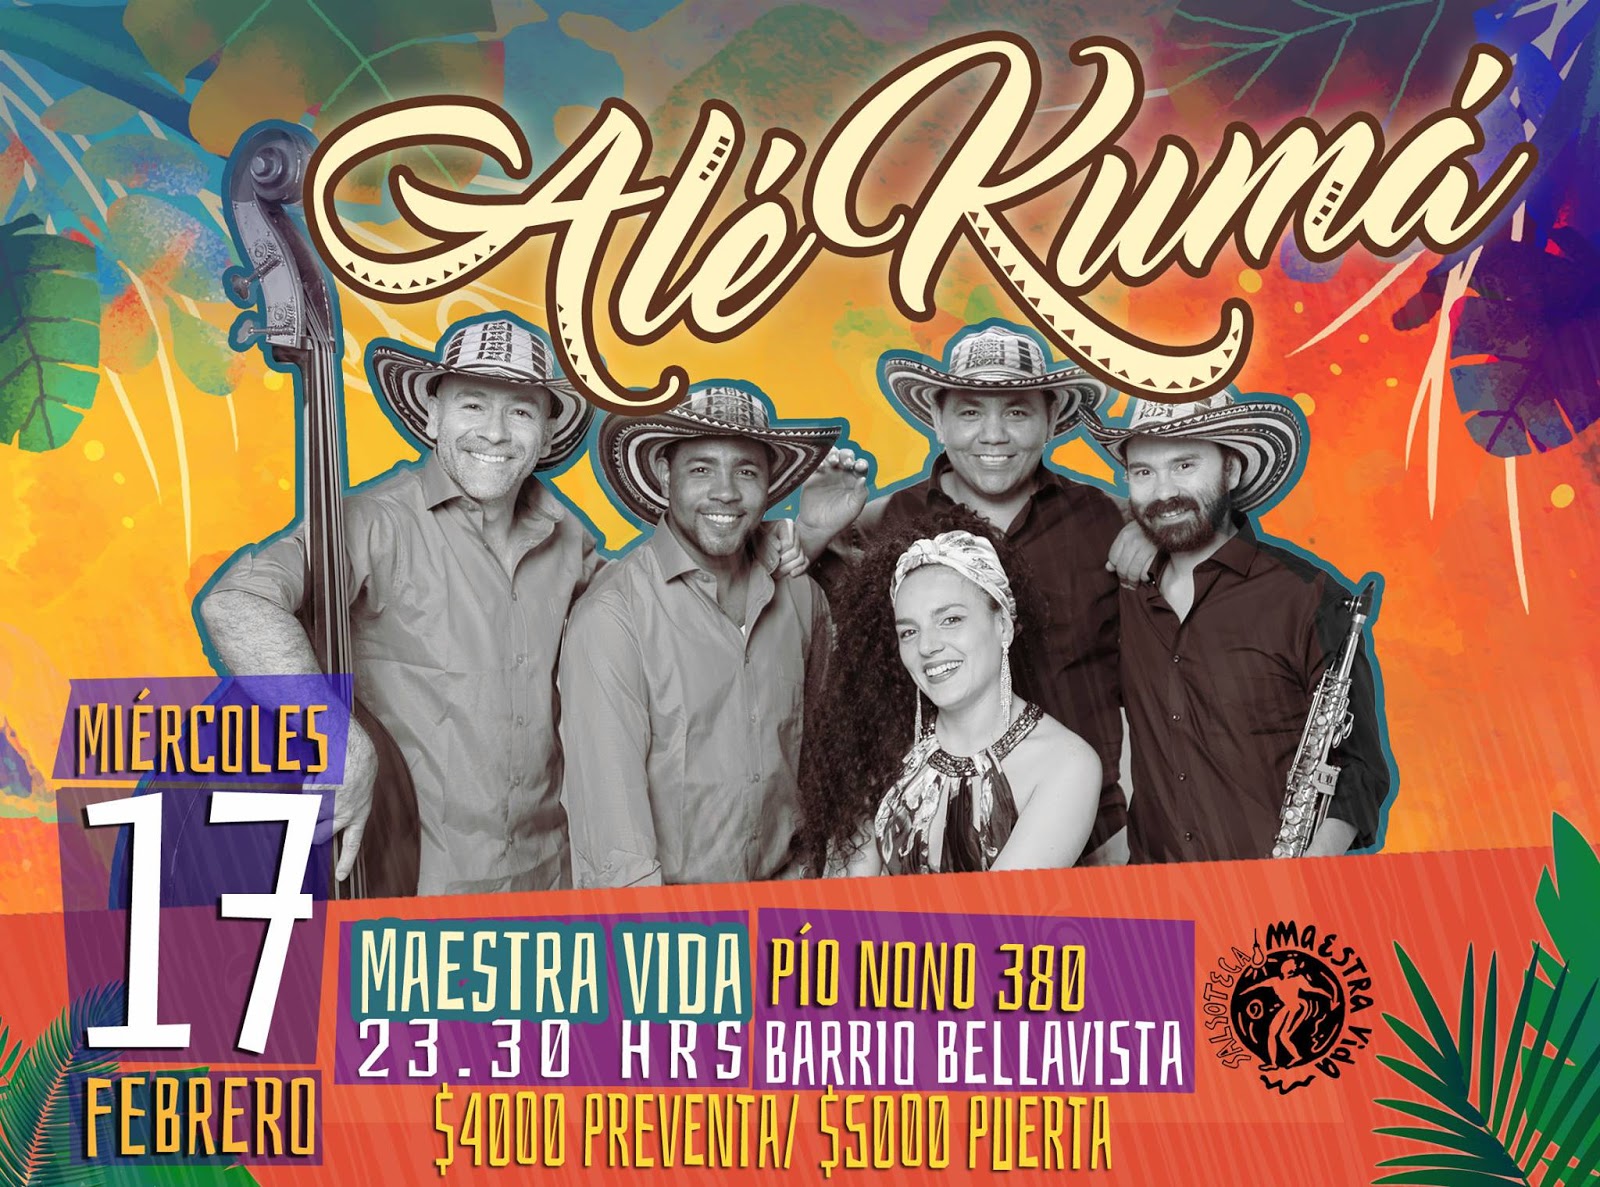 La banda Alé Kuma, que representará a Colombia en la competencia del Festival de Viña del Mar, se presenta entiago